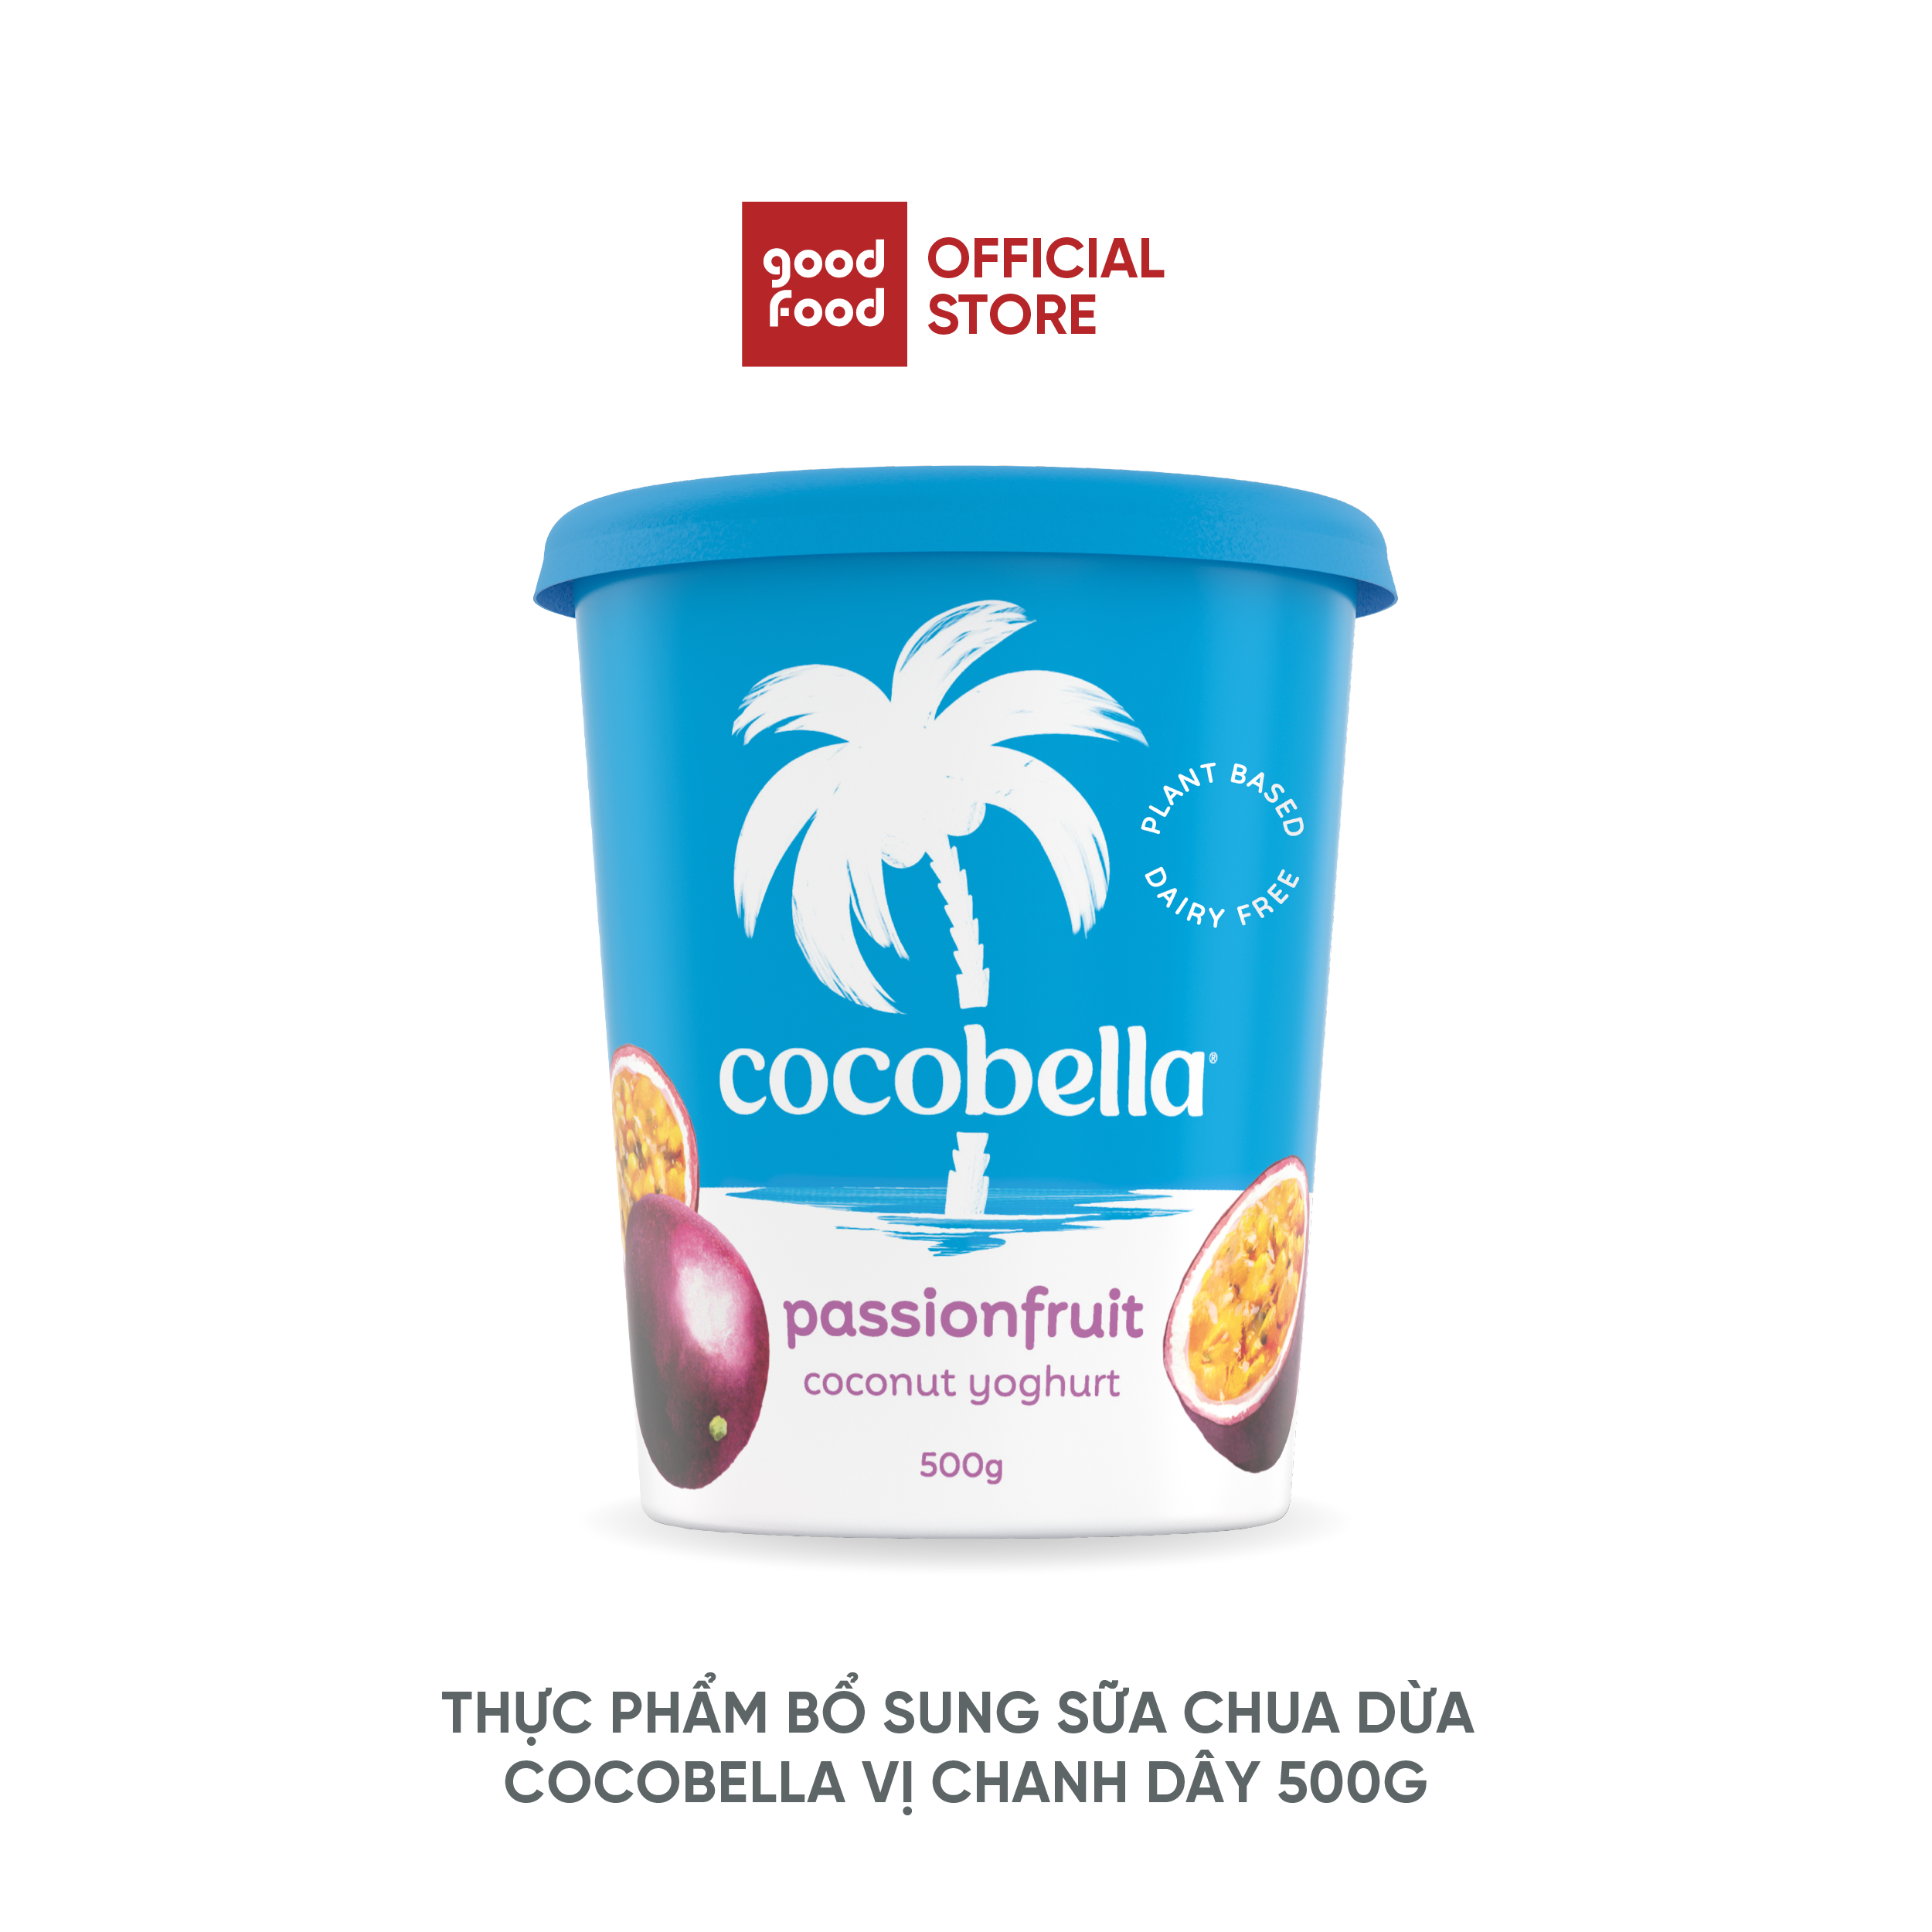 Thực Phẩm Bổ Sung Sữa Chua Dừa Cocobella vị chanh dây 500G - 1 hũ